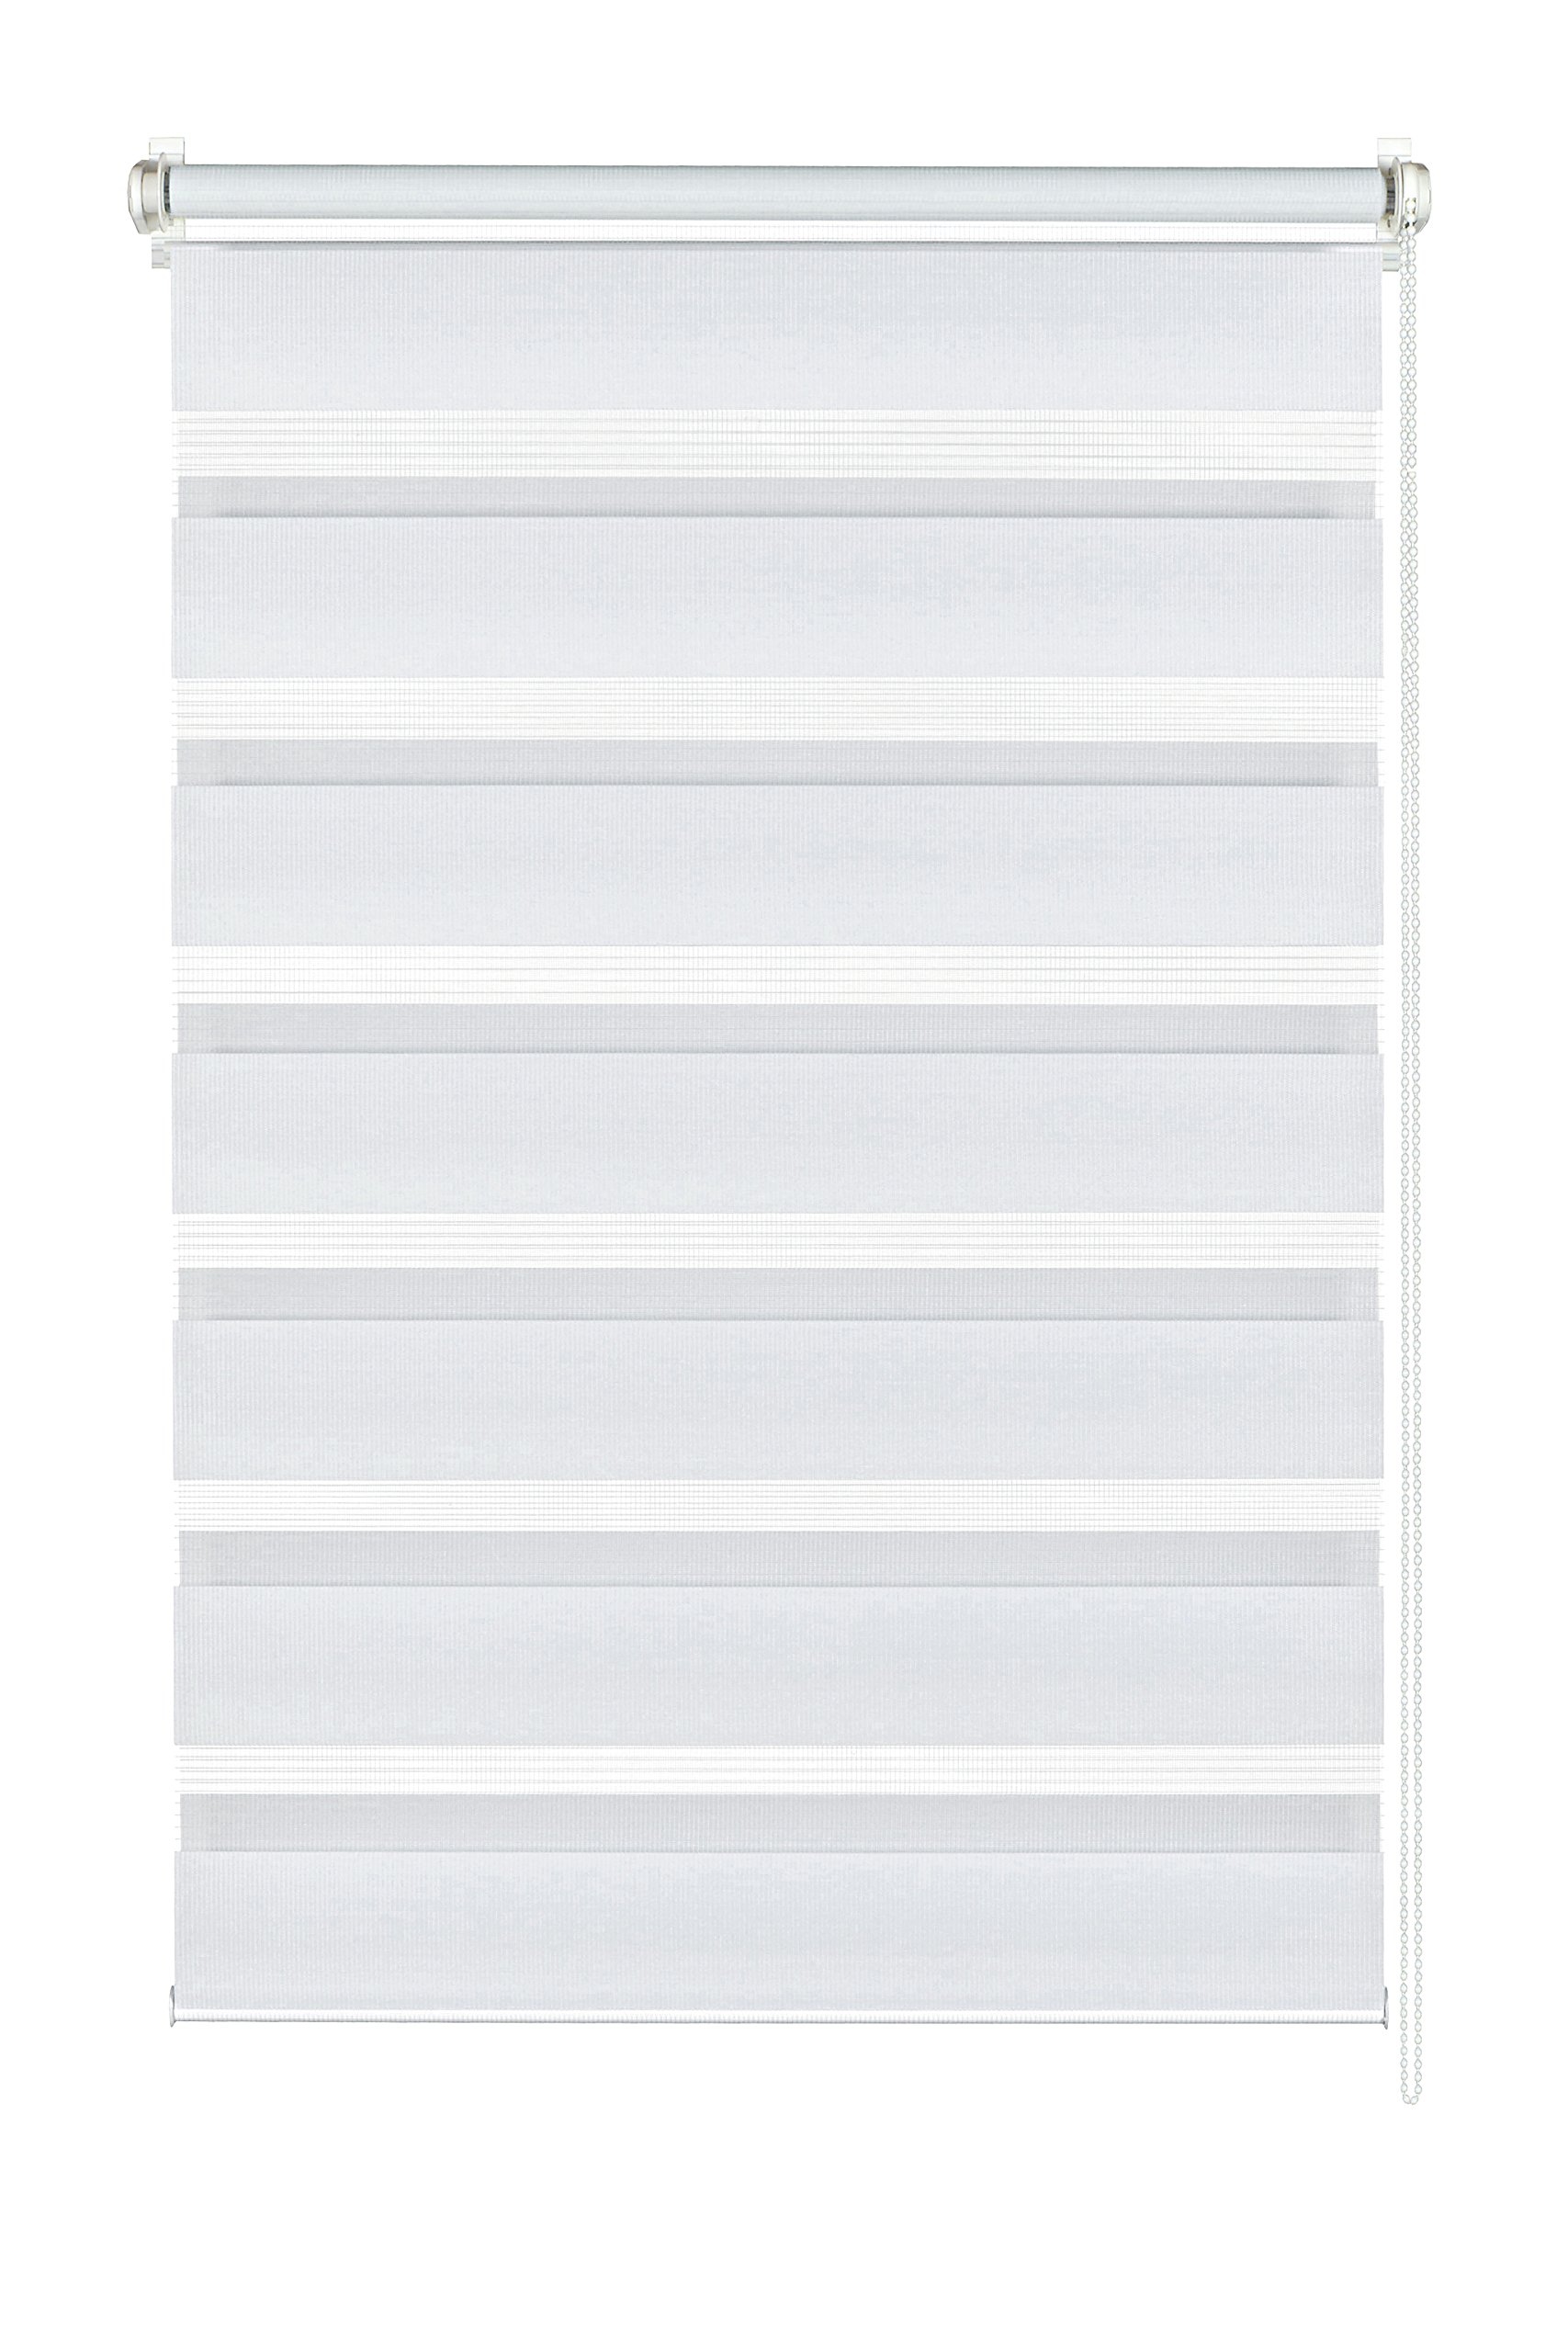 GARDINIA Doppelrollo zum Klemmen oder Kleben, Duo-Rollo ohne Bohren, Seitenzugrollo, Transparente und blickdichte Streifen, Weiß, 60 x 150 cm